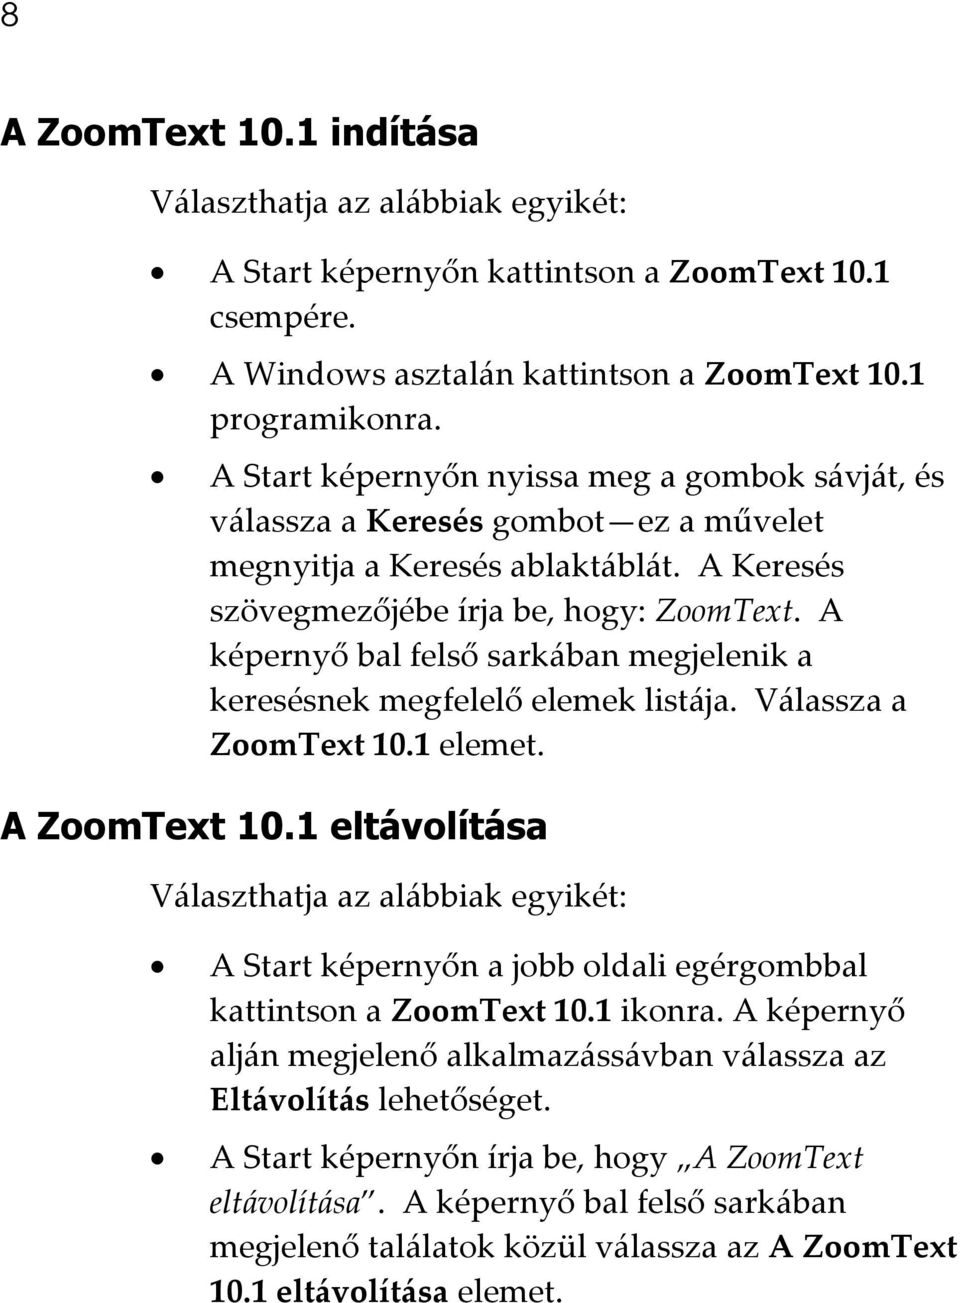 A képernyő bal felső sarkában megjelenik a keresésnek megfelelő elemek listája. Válassza a ZoomText 10.1 elemet. A ZoomText 10.